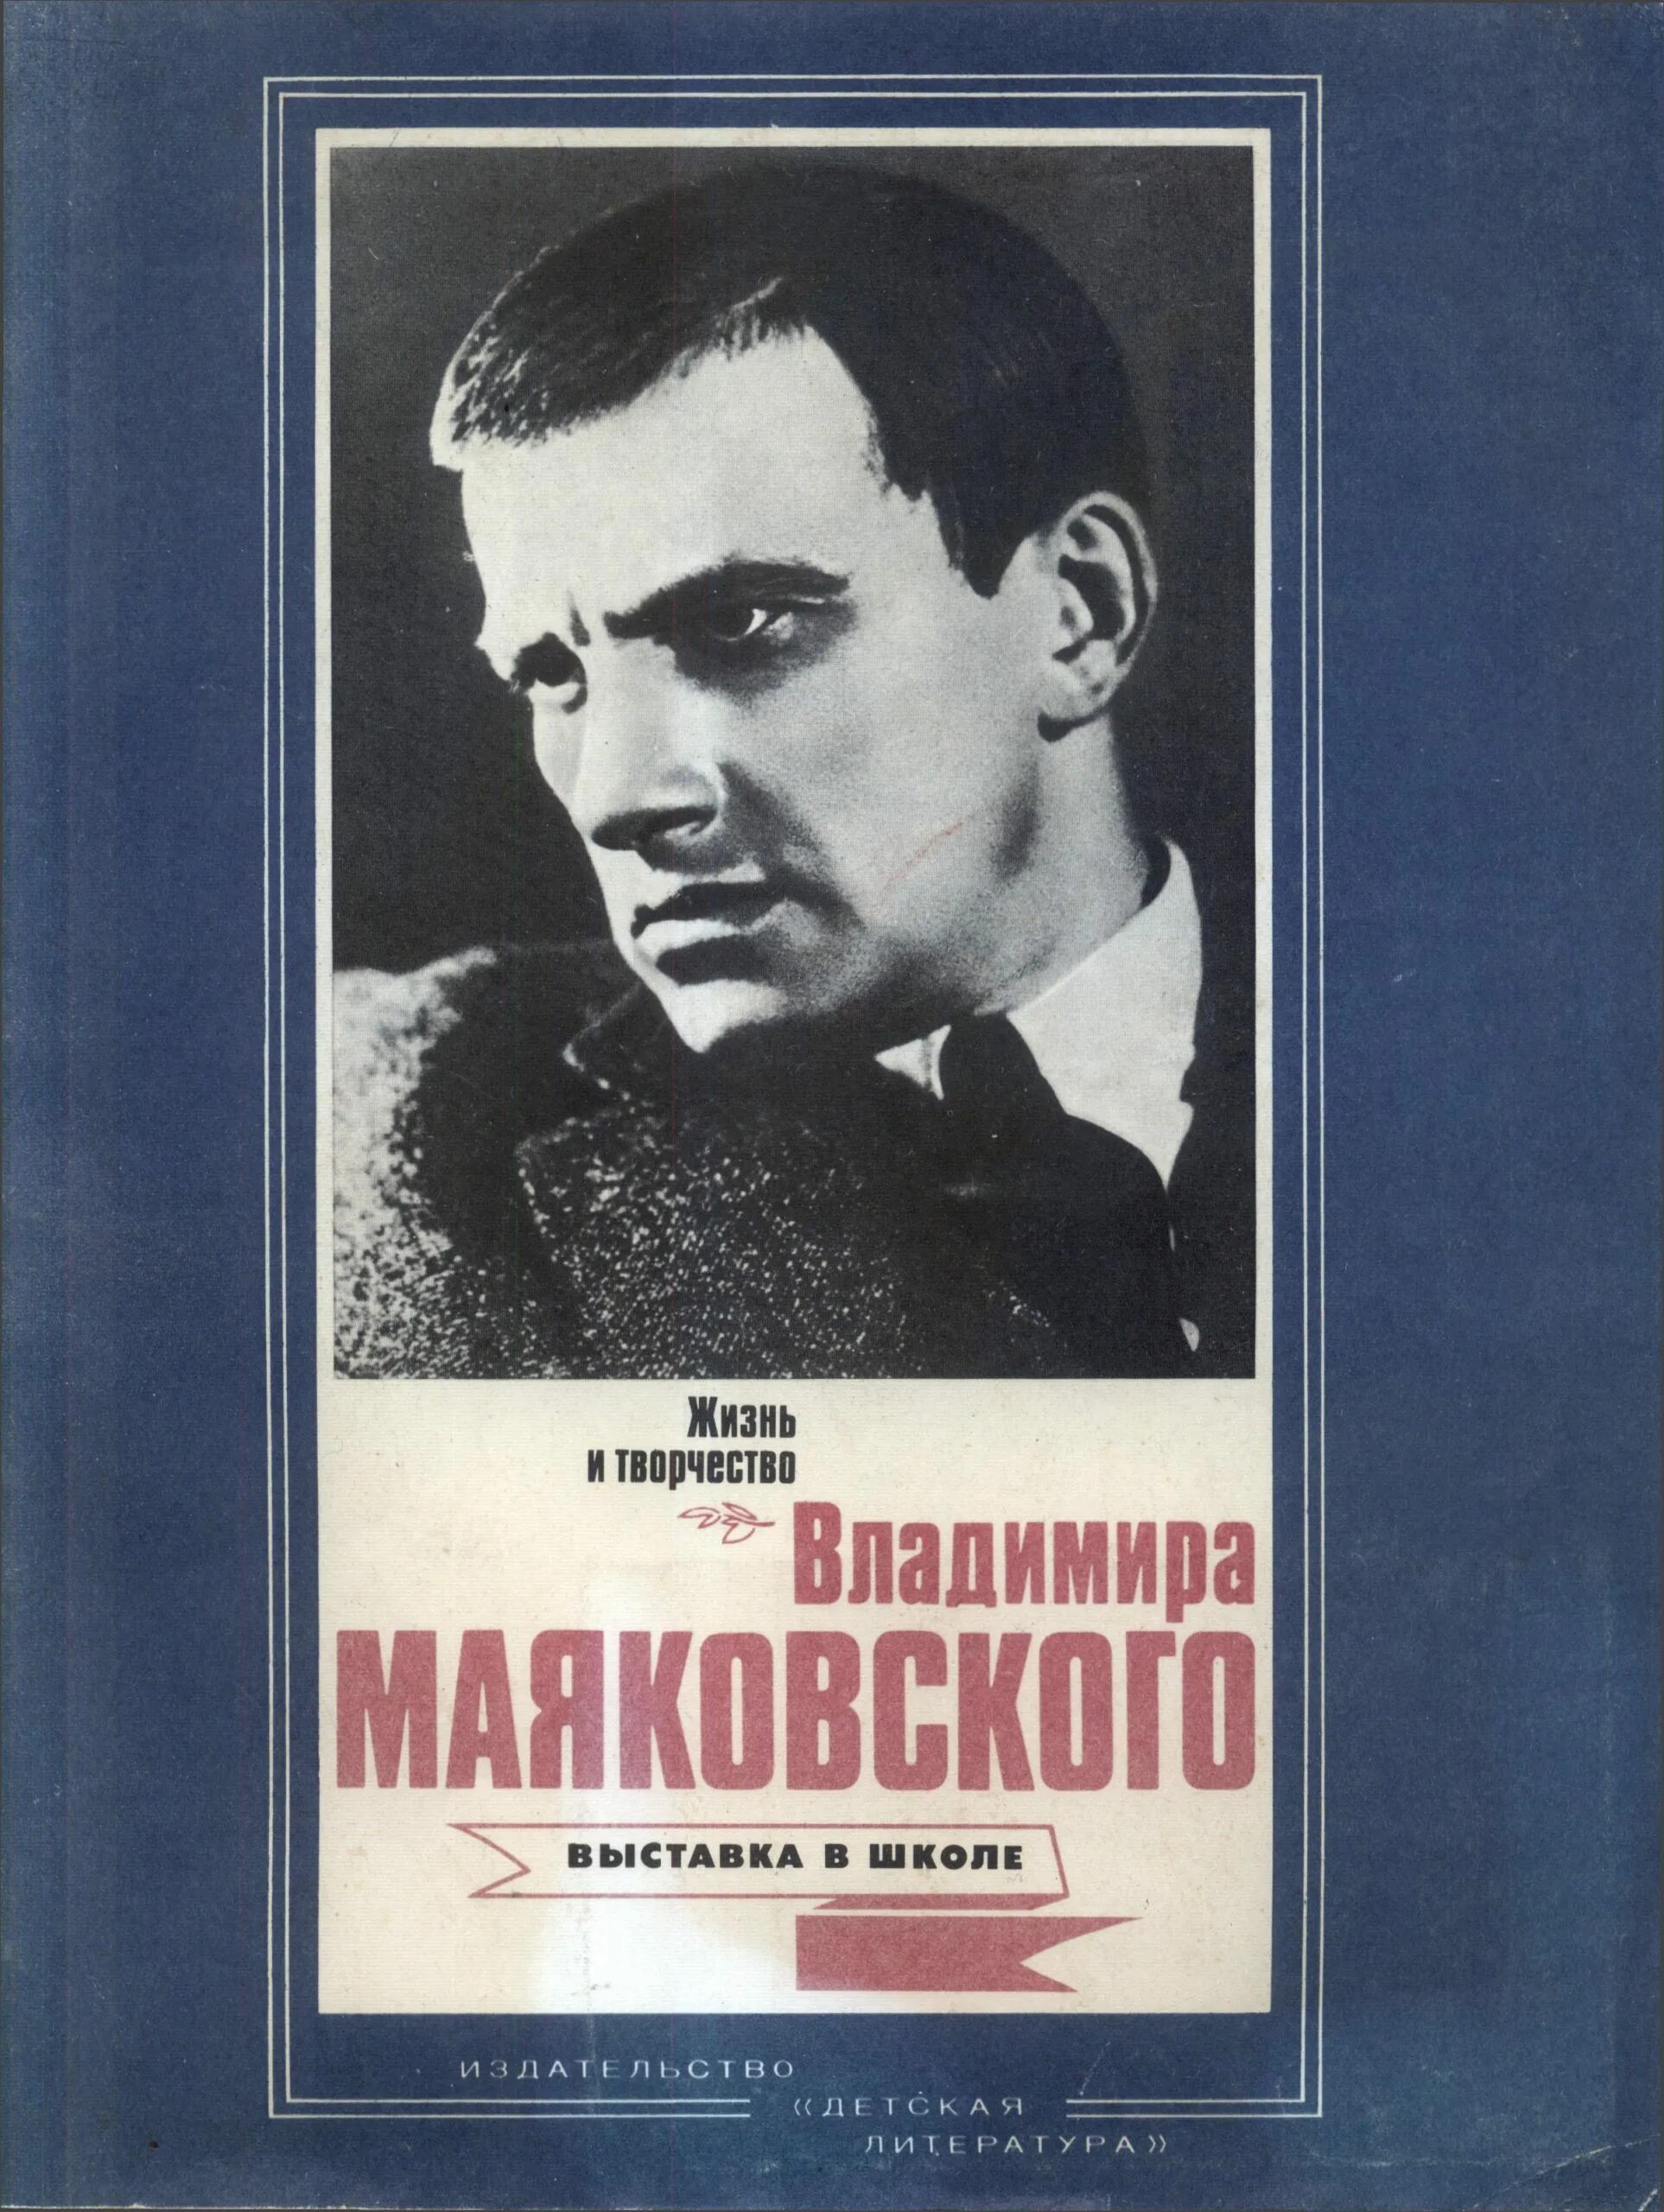 Л ю писатель. Маяковский обложки книг.